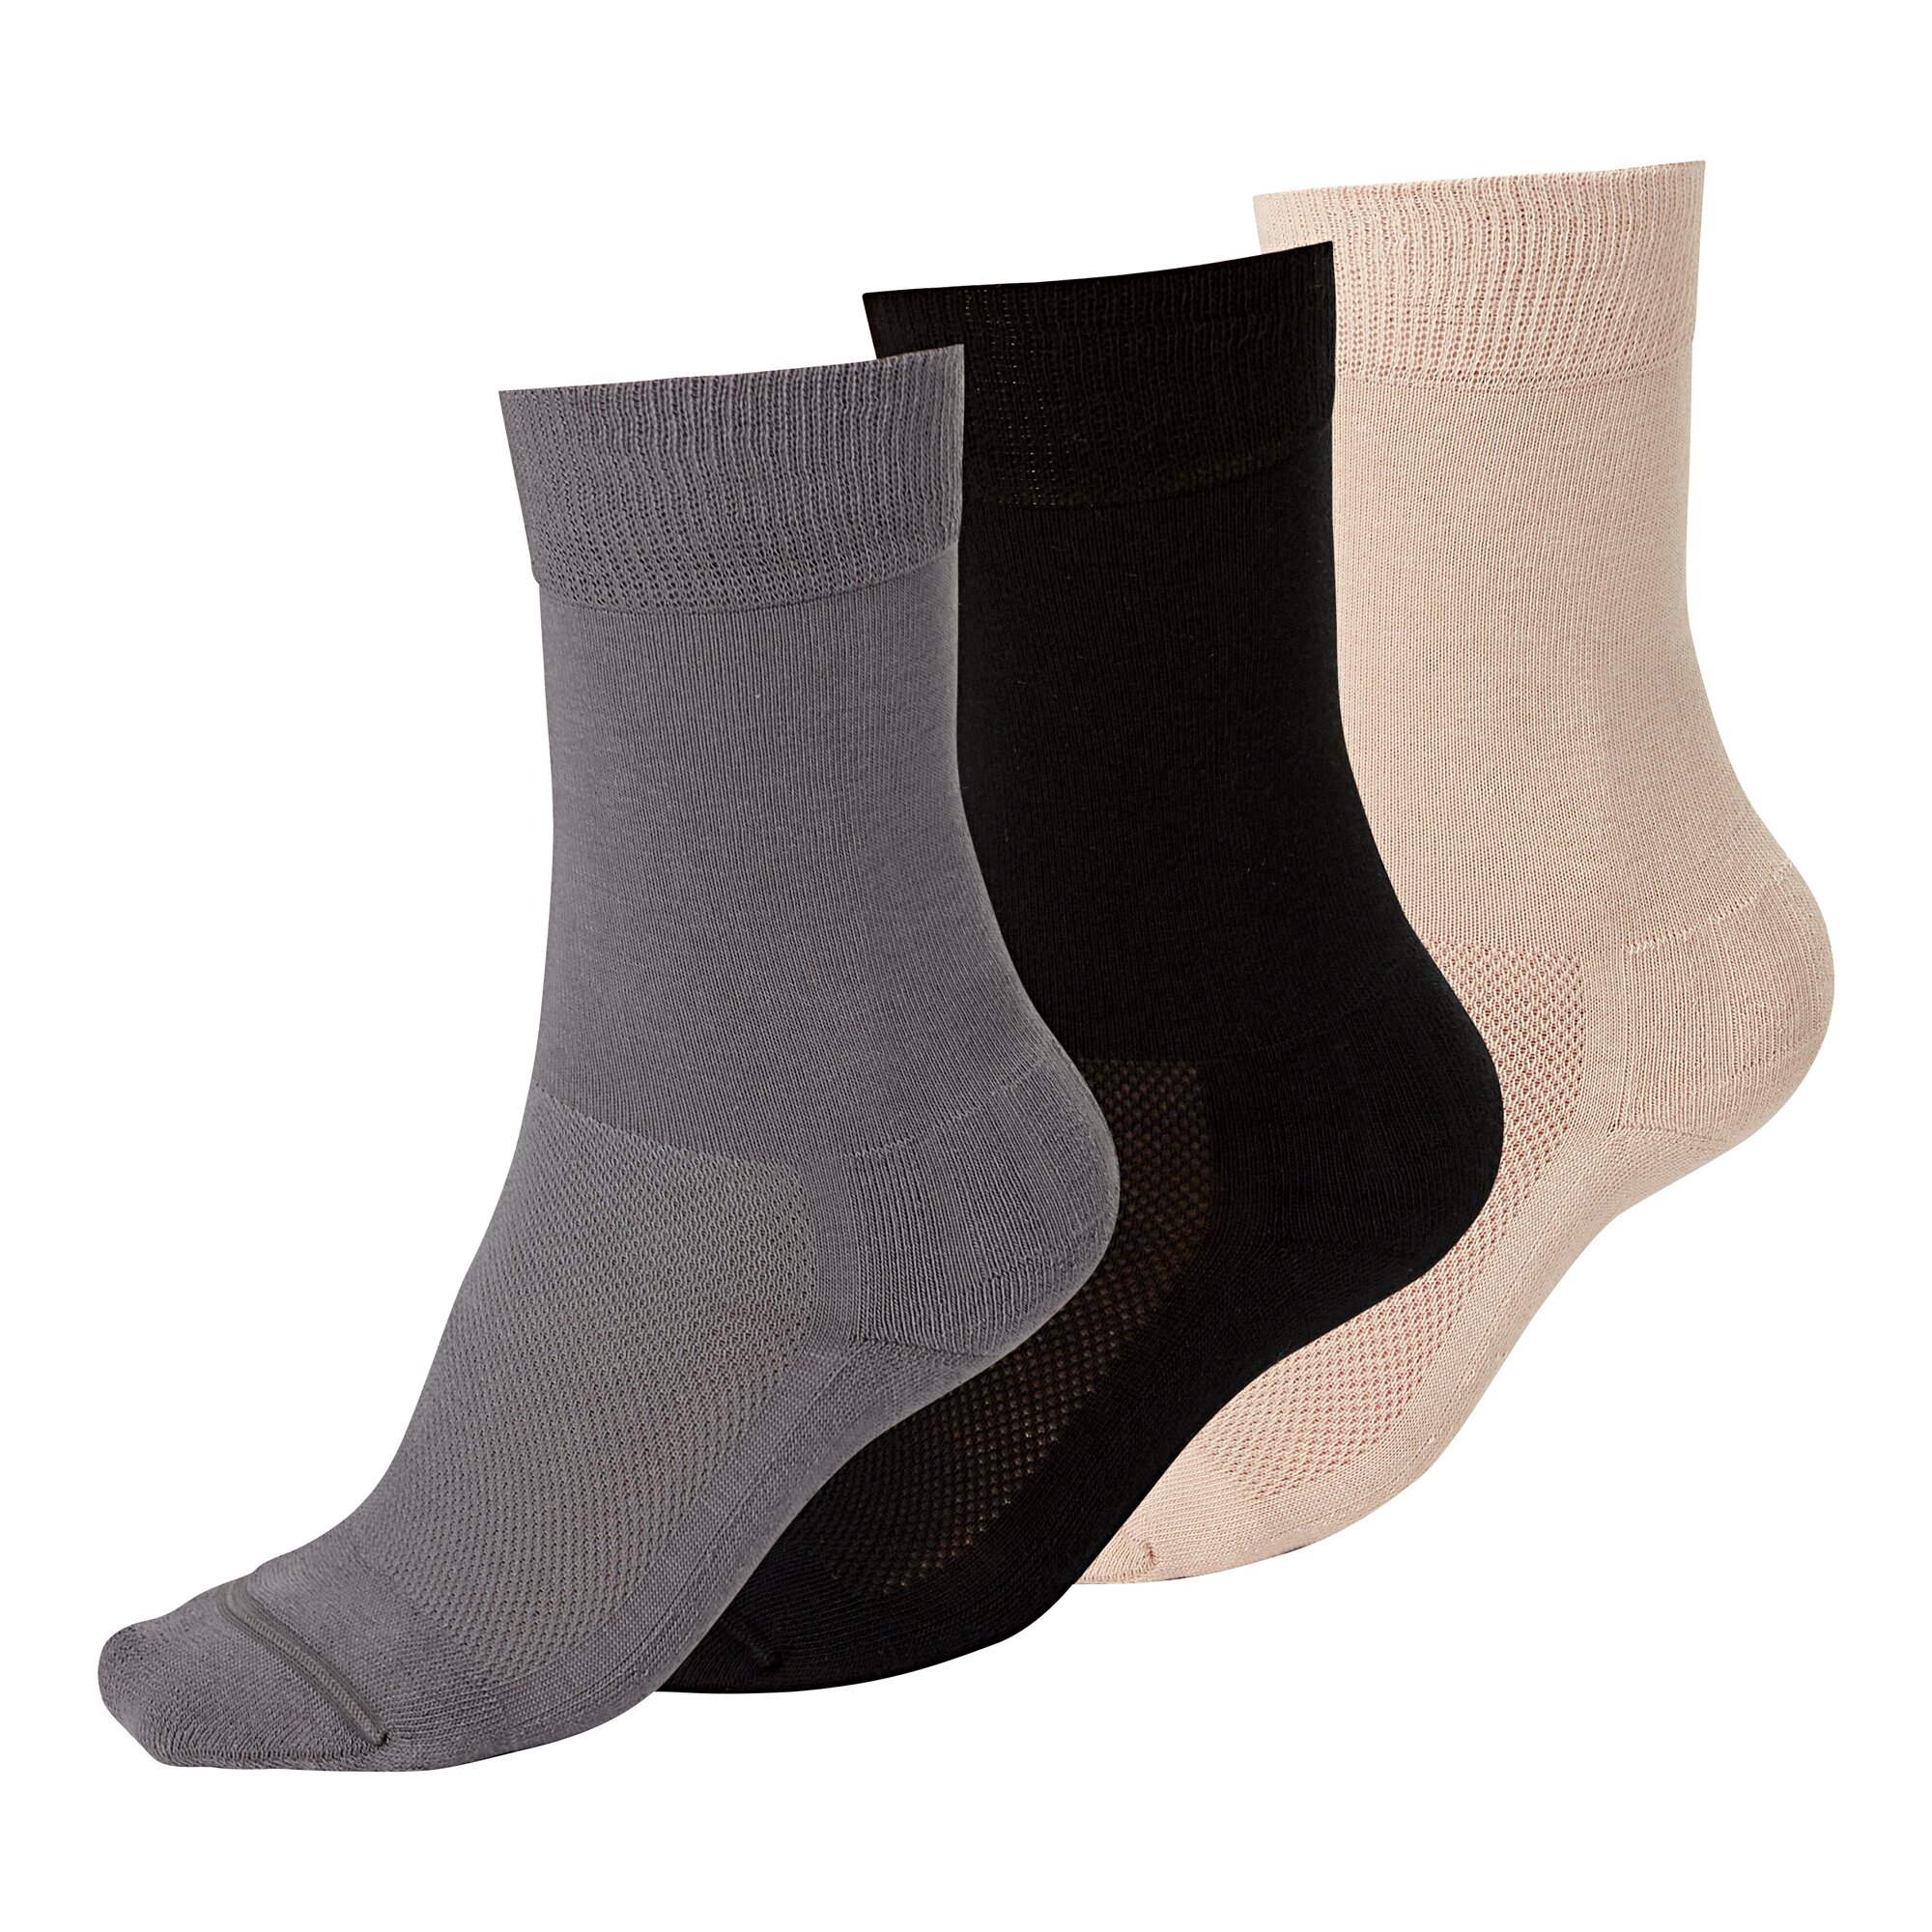 Image of Venenfreund "Socken", 2 Paar, Größe: 2, schwarz